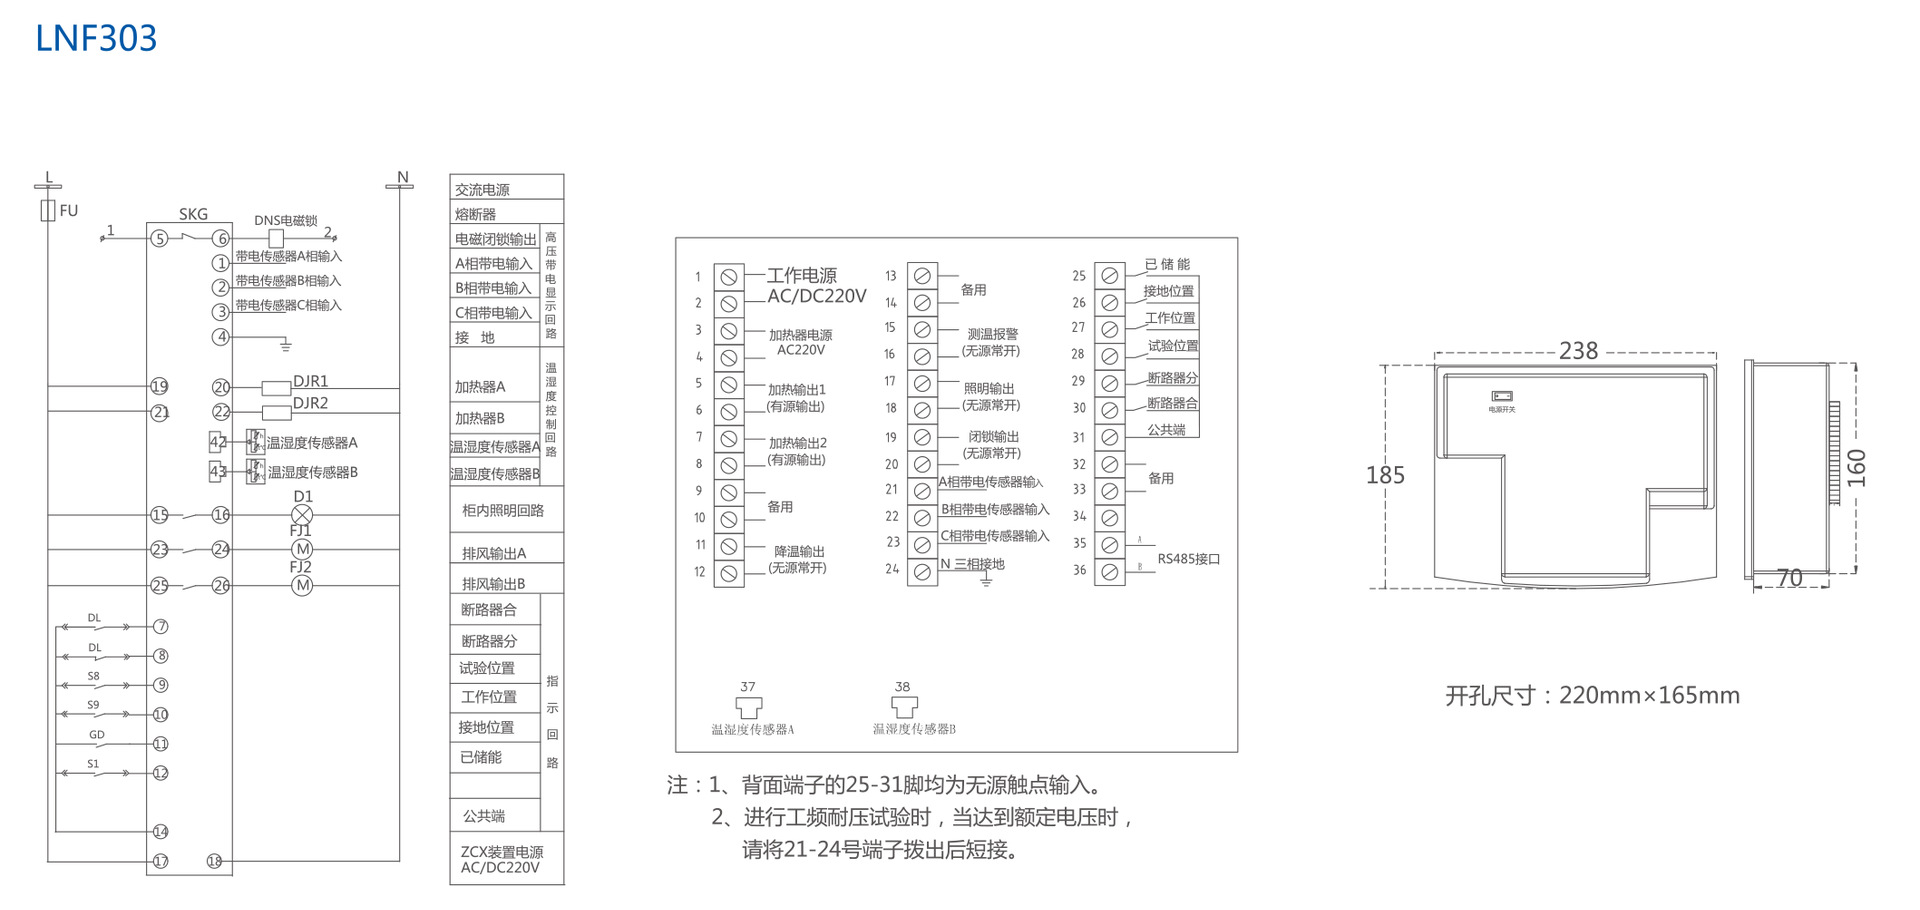 领菲高压液晶显示智能操控装置LNF303江苏斯菲尔生产厂家直销 LINFEE,领菲,斯菲尔,液晶,智能操控